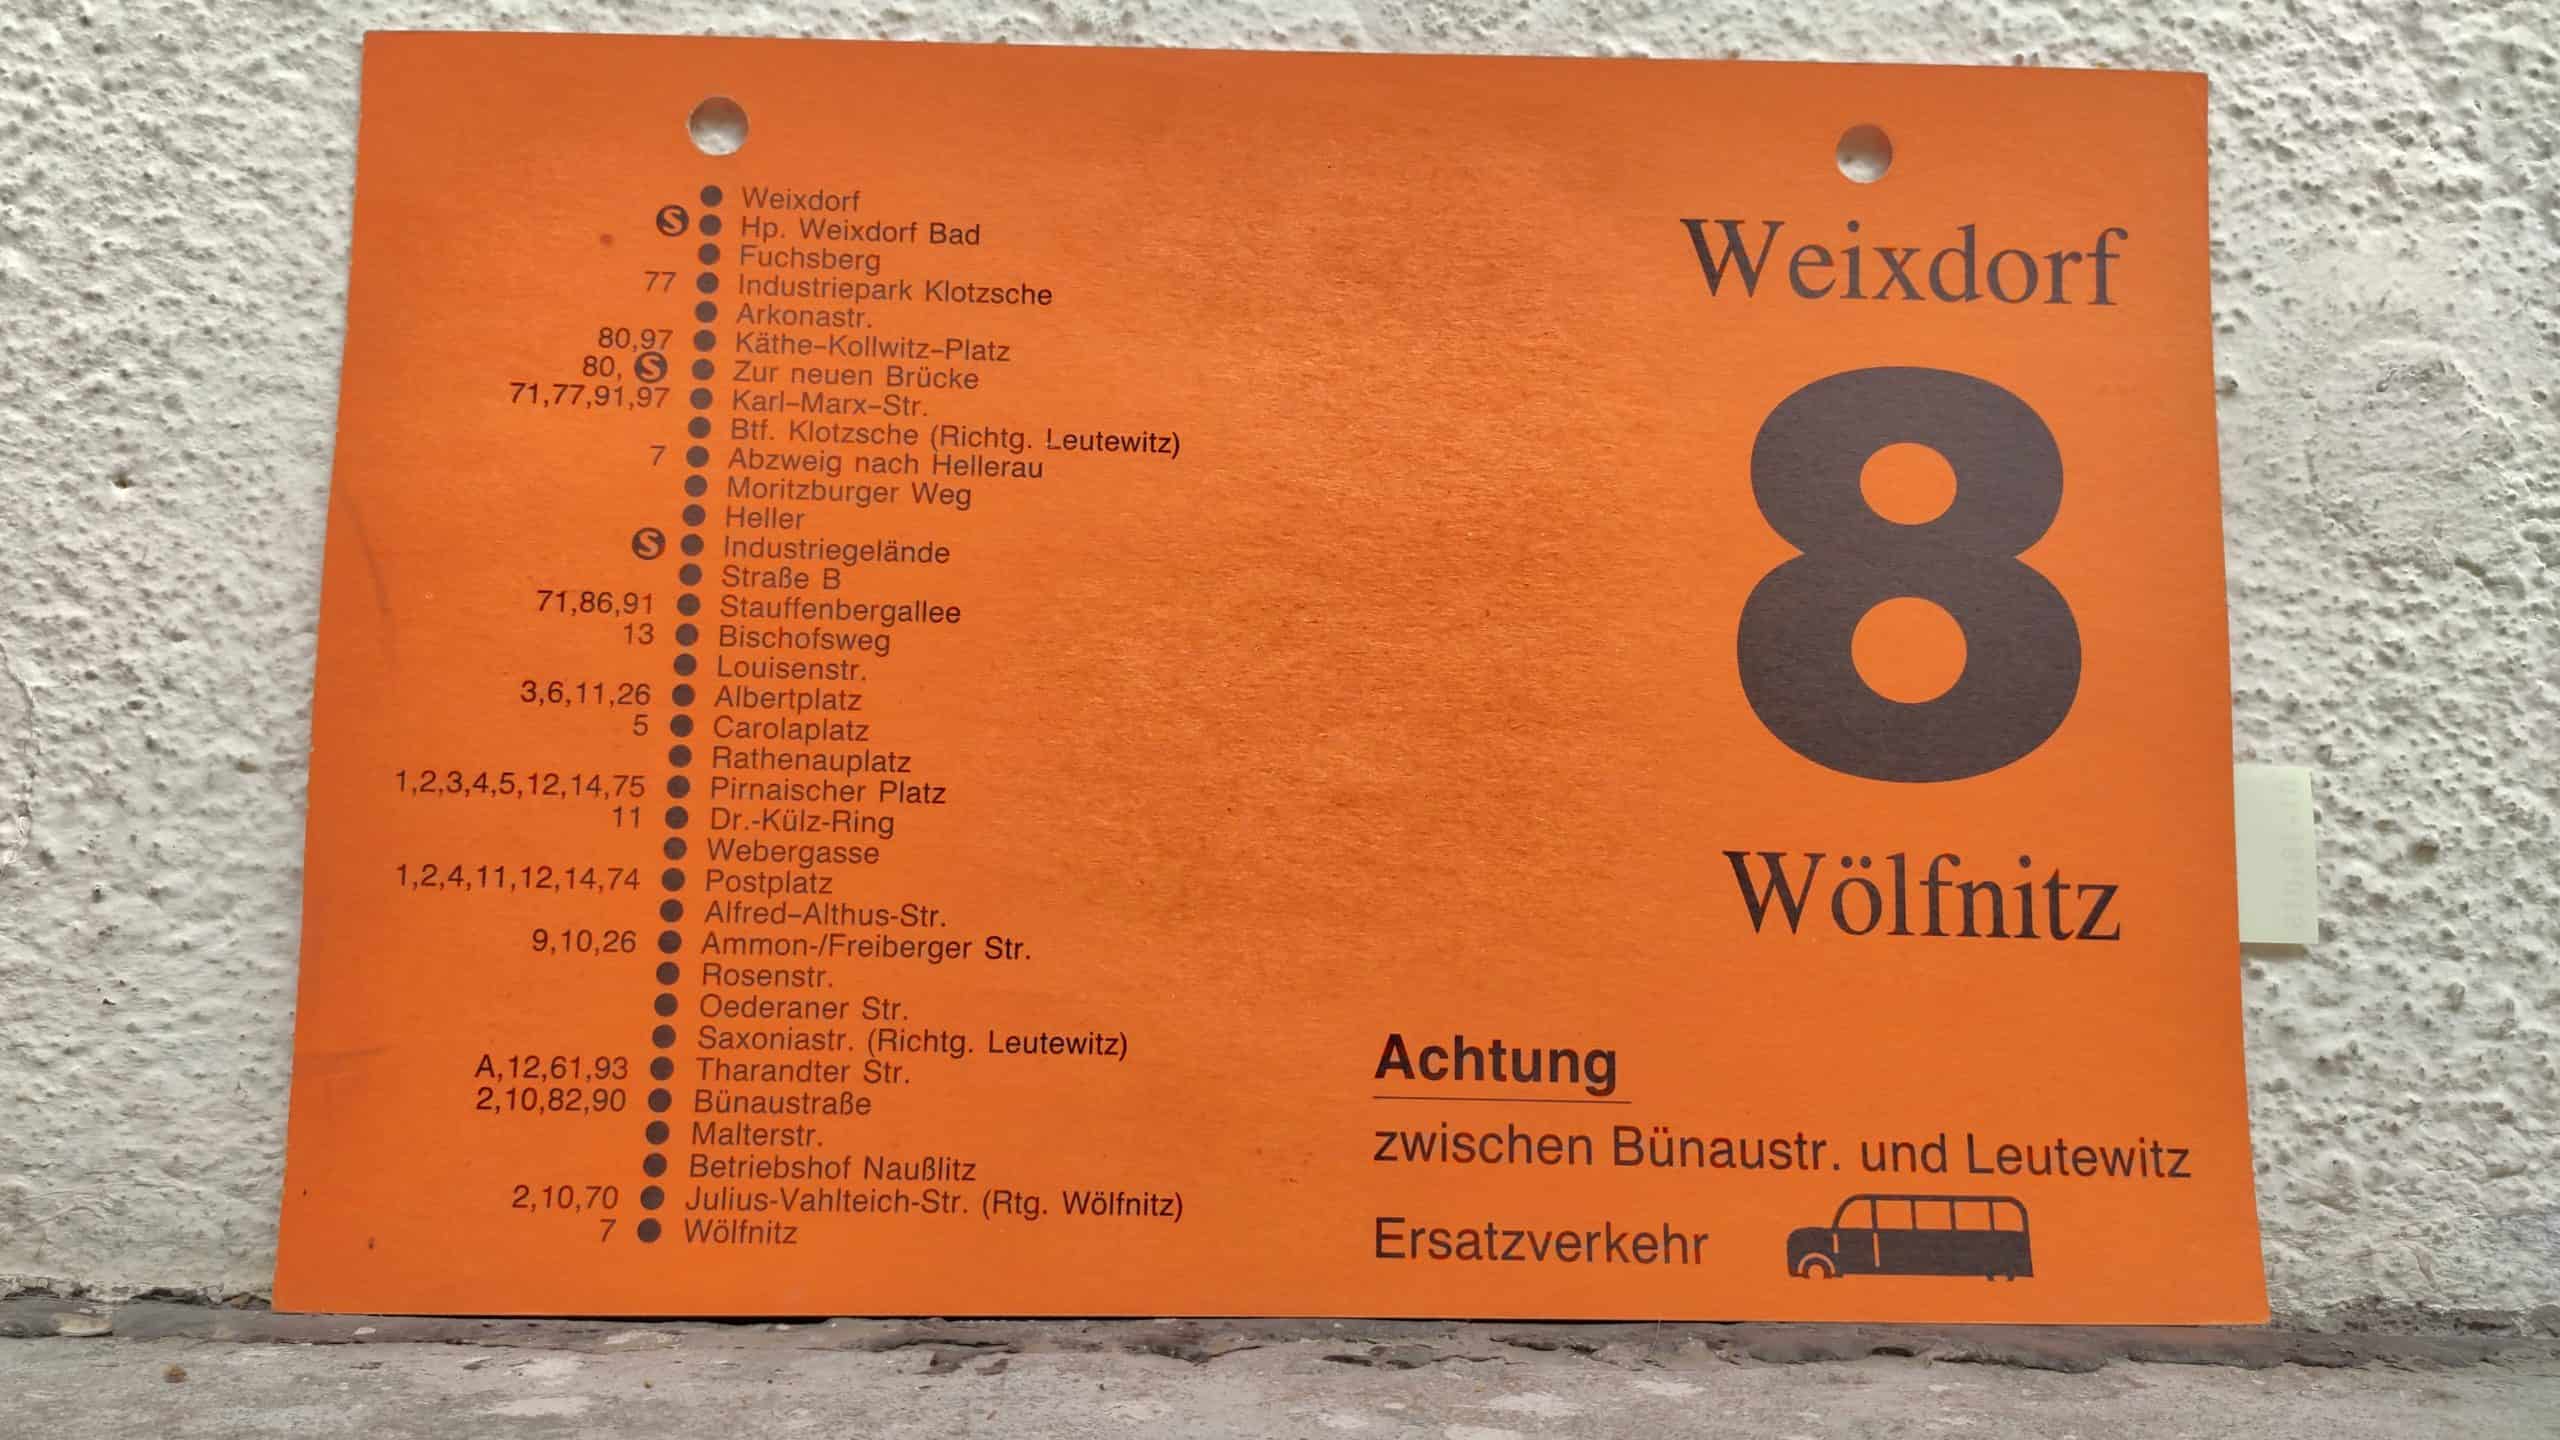 8 Weixdorf – Wölfnitz #2